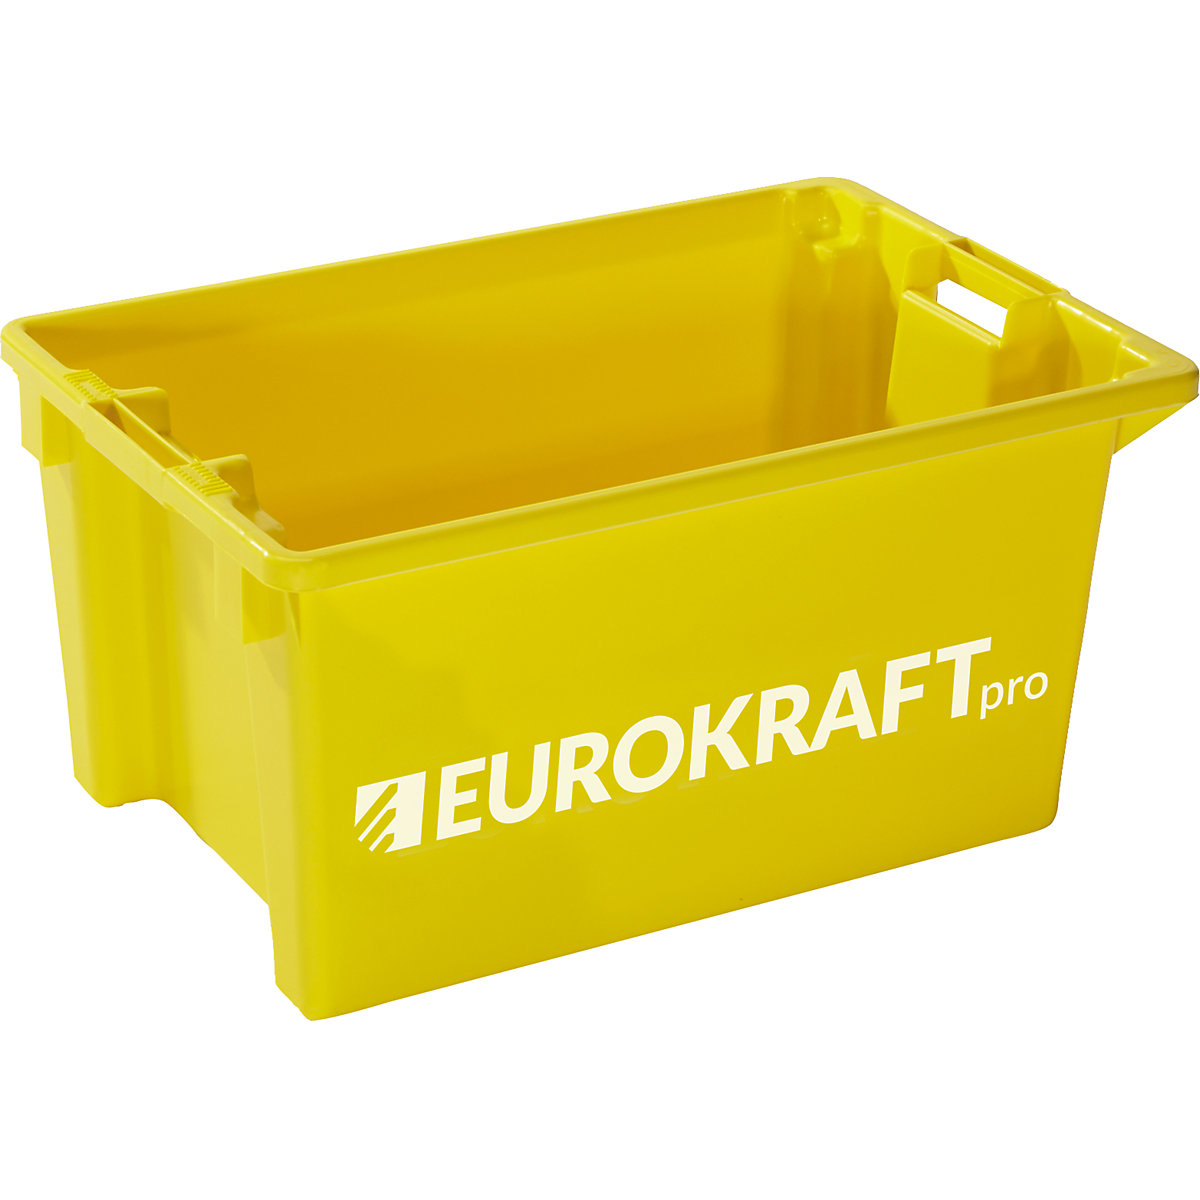 Otočná stohovací nádoba - eurokraft pro